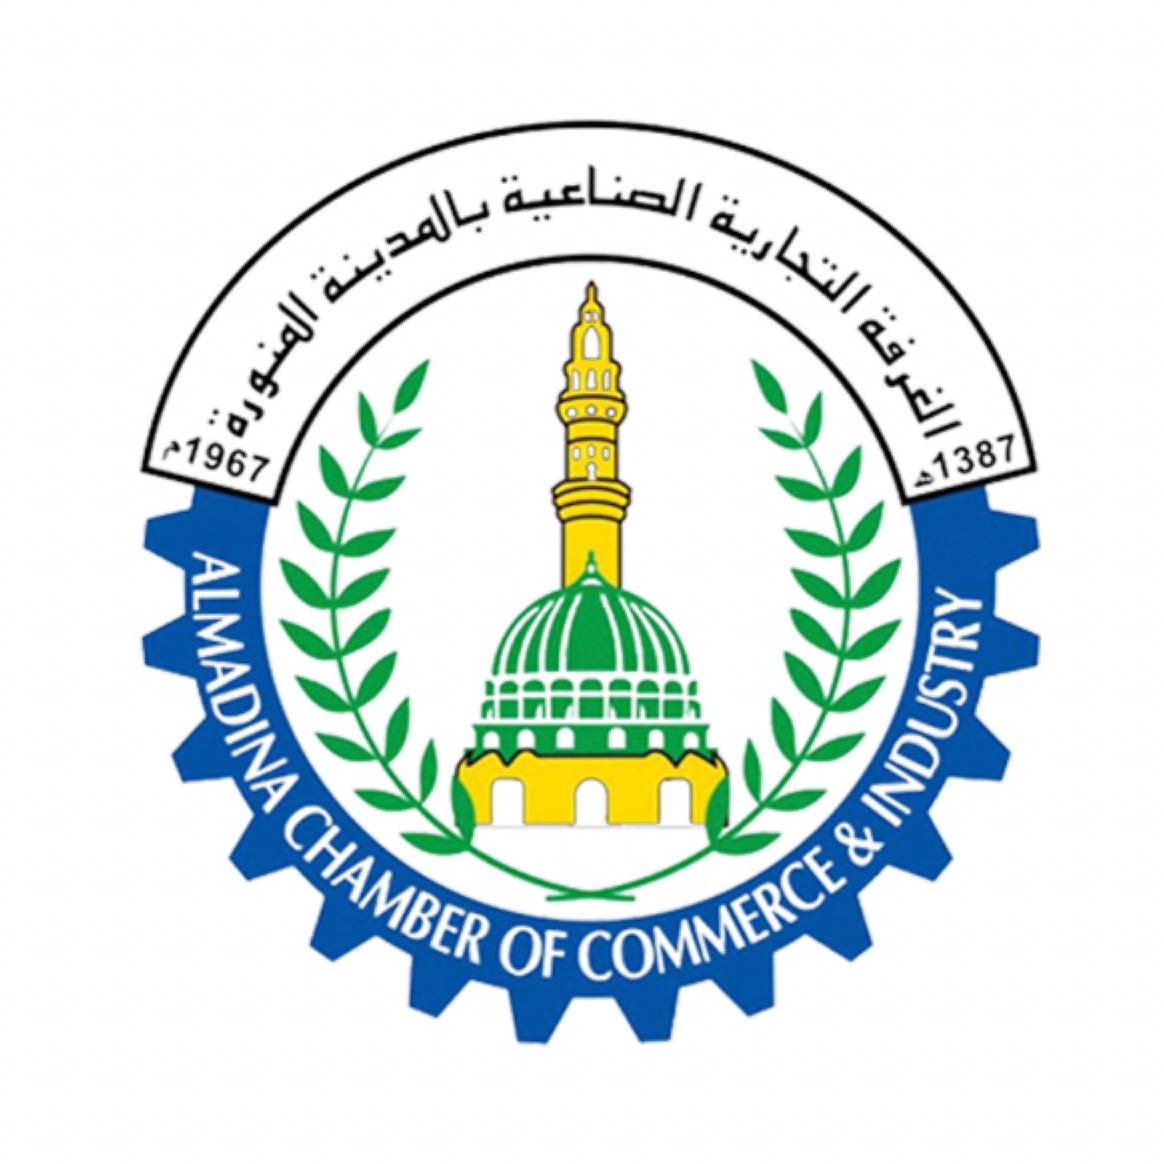 توفر غرفة المدنية المنورة بالمملكة العربية السعودية وظائف بائع للبيع بالتجزئة للعمل في مكتب كفاءات طيبة الوطنية  في مدينة الرياض للمساعدة في عمليات البيع.